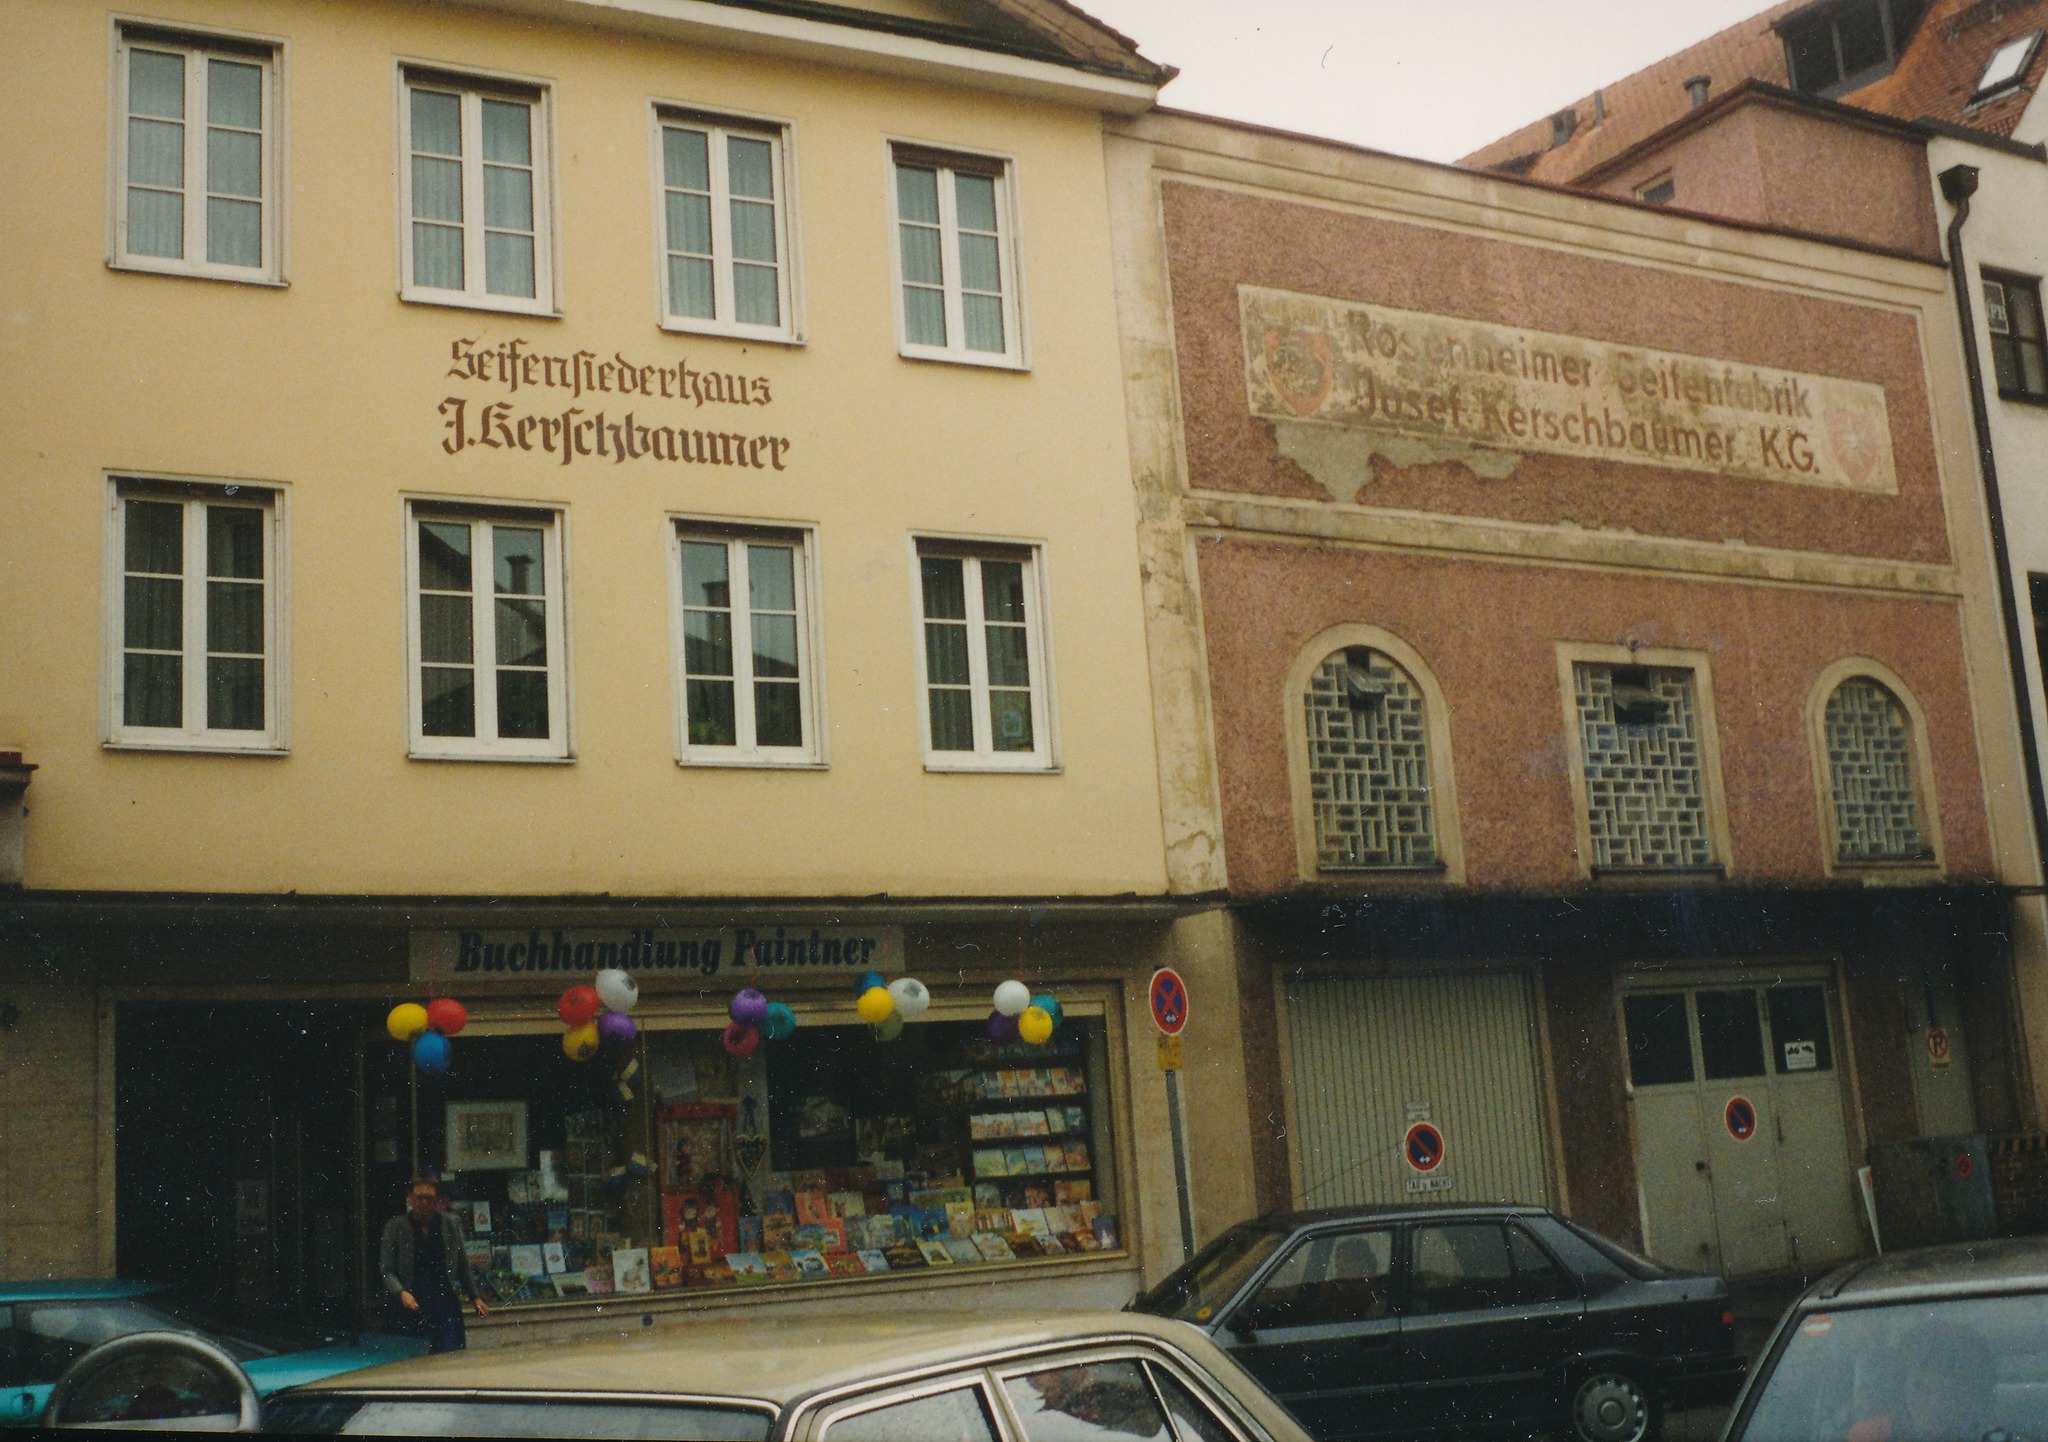 Buchhandlung Paintner in der Ruedorfferstraße in Rosenheim im Jahr 1995. Foto: Archiv Herbert Borrmann